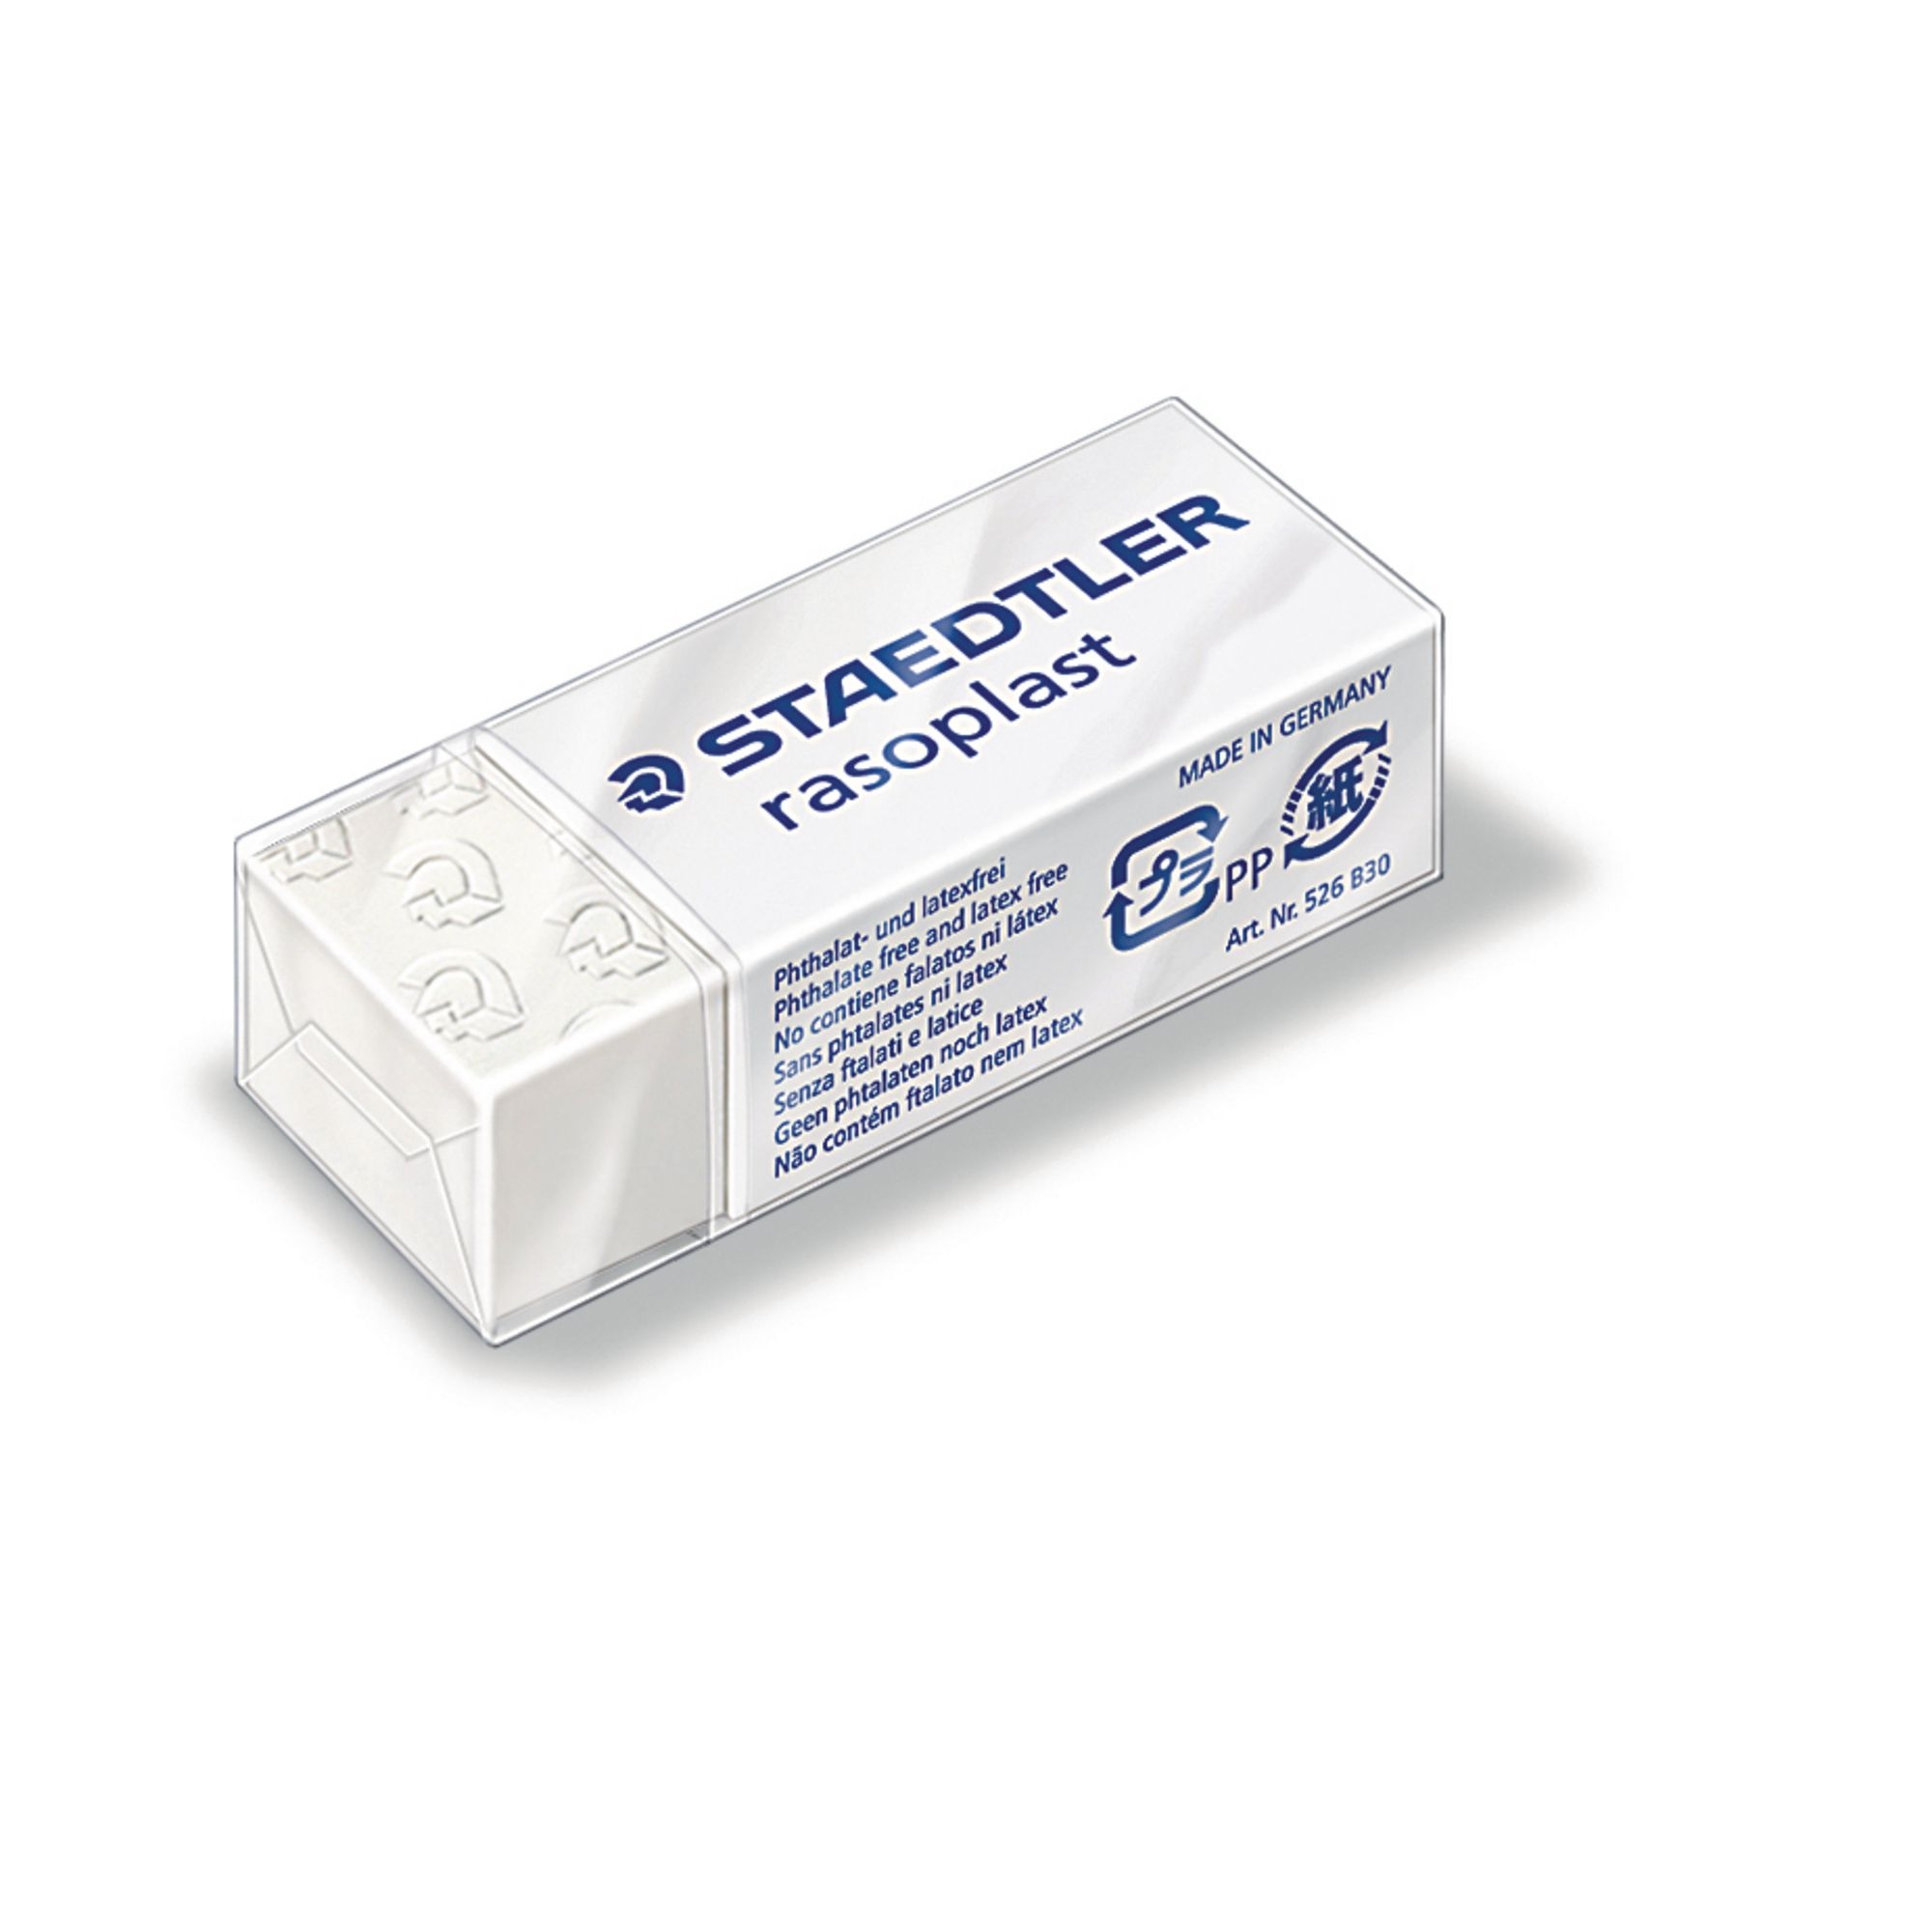 Staedtler Rasoplast Eraser SmallWhite - Pack of 30